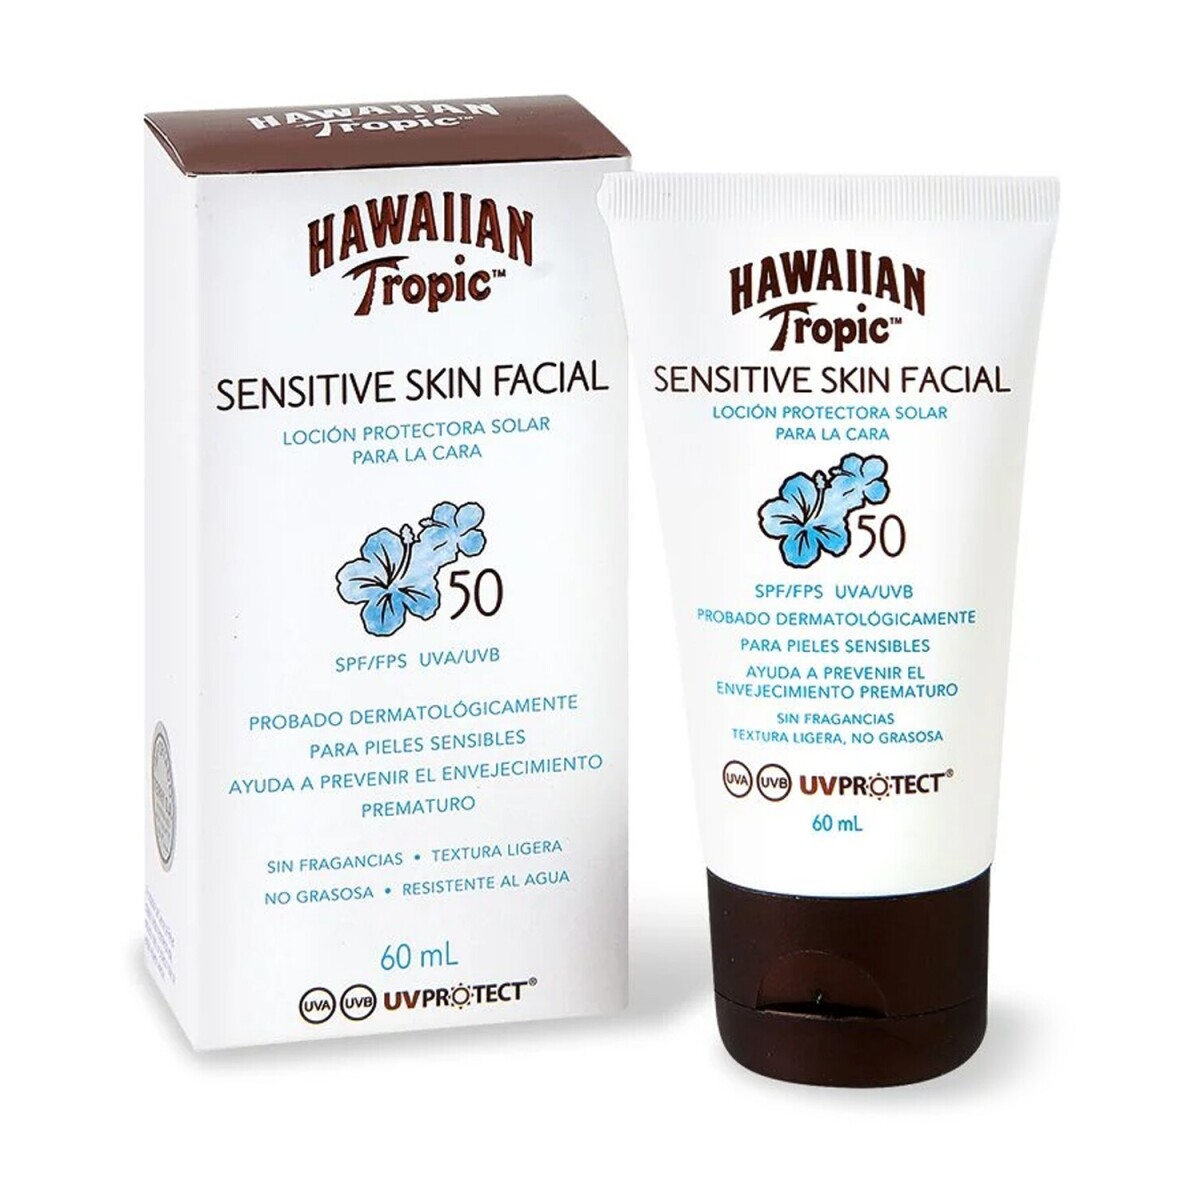 Protector solar loción Hawaiian Tropic Sensitive Skin Facial FPS50 60ml 